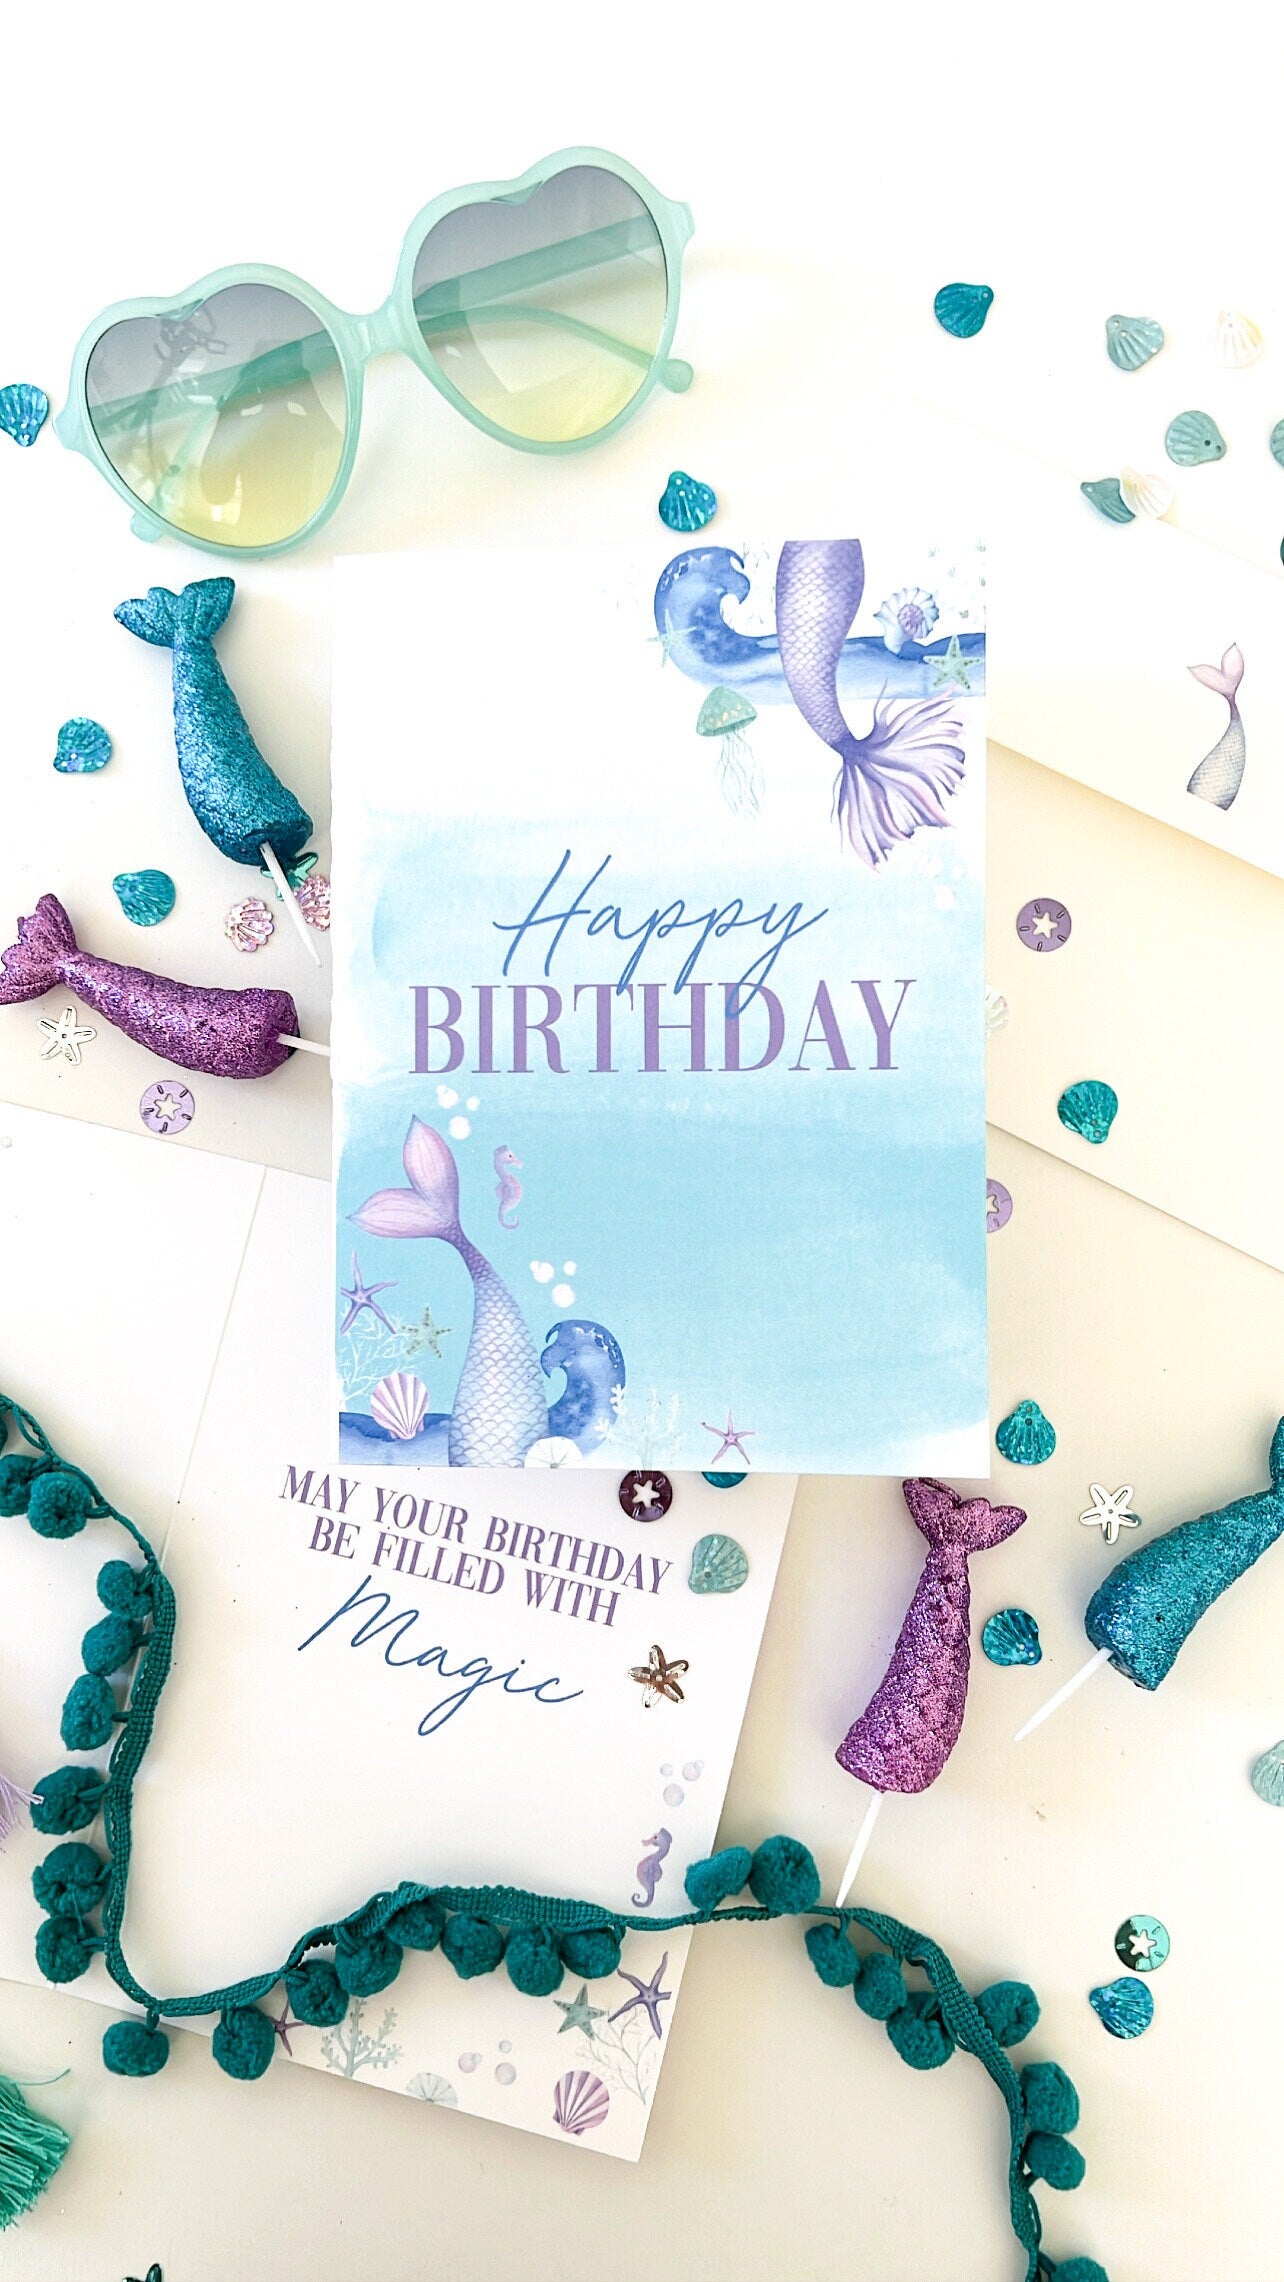 Happy birthday Card, Mermaid Birthday Card, Kids Birthday Greeting Card, Girl Birthday Personalized Card, Printed Mermaid Birthday Card, 5x7